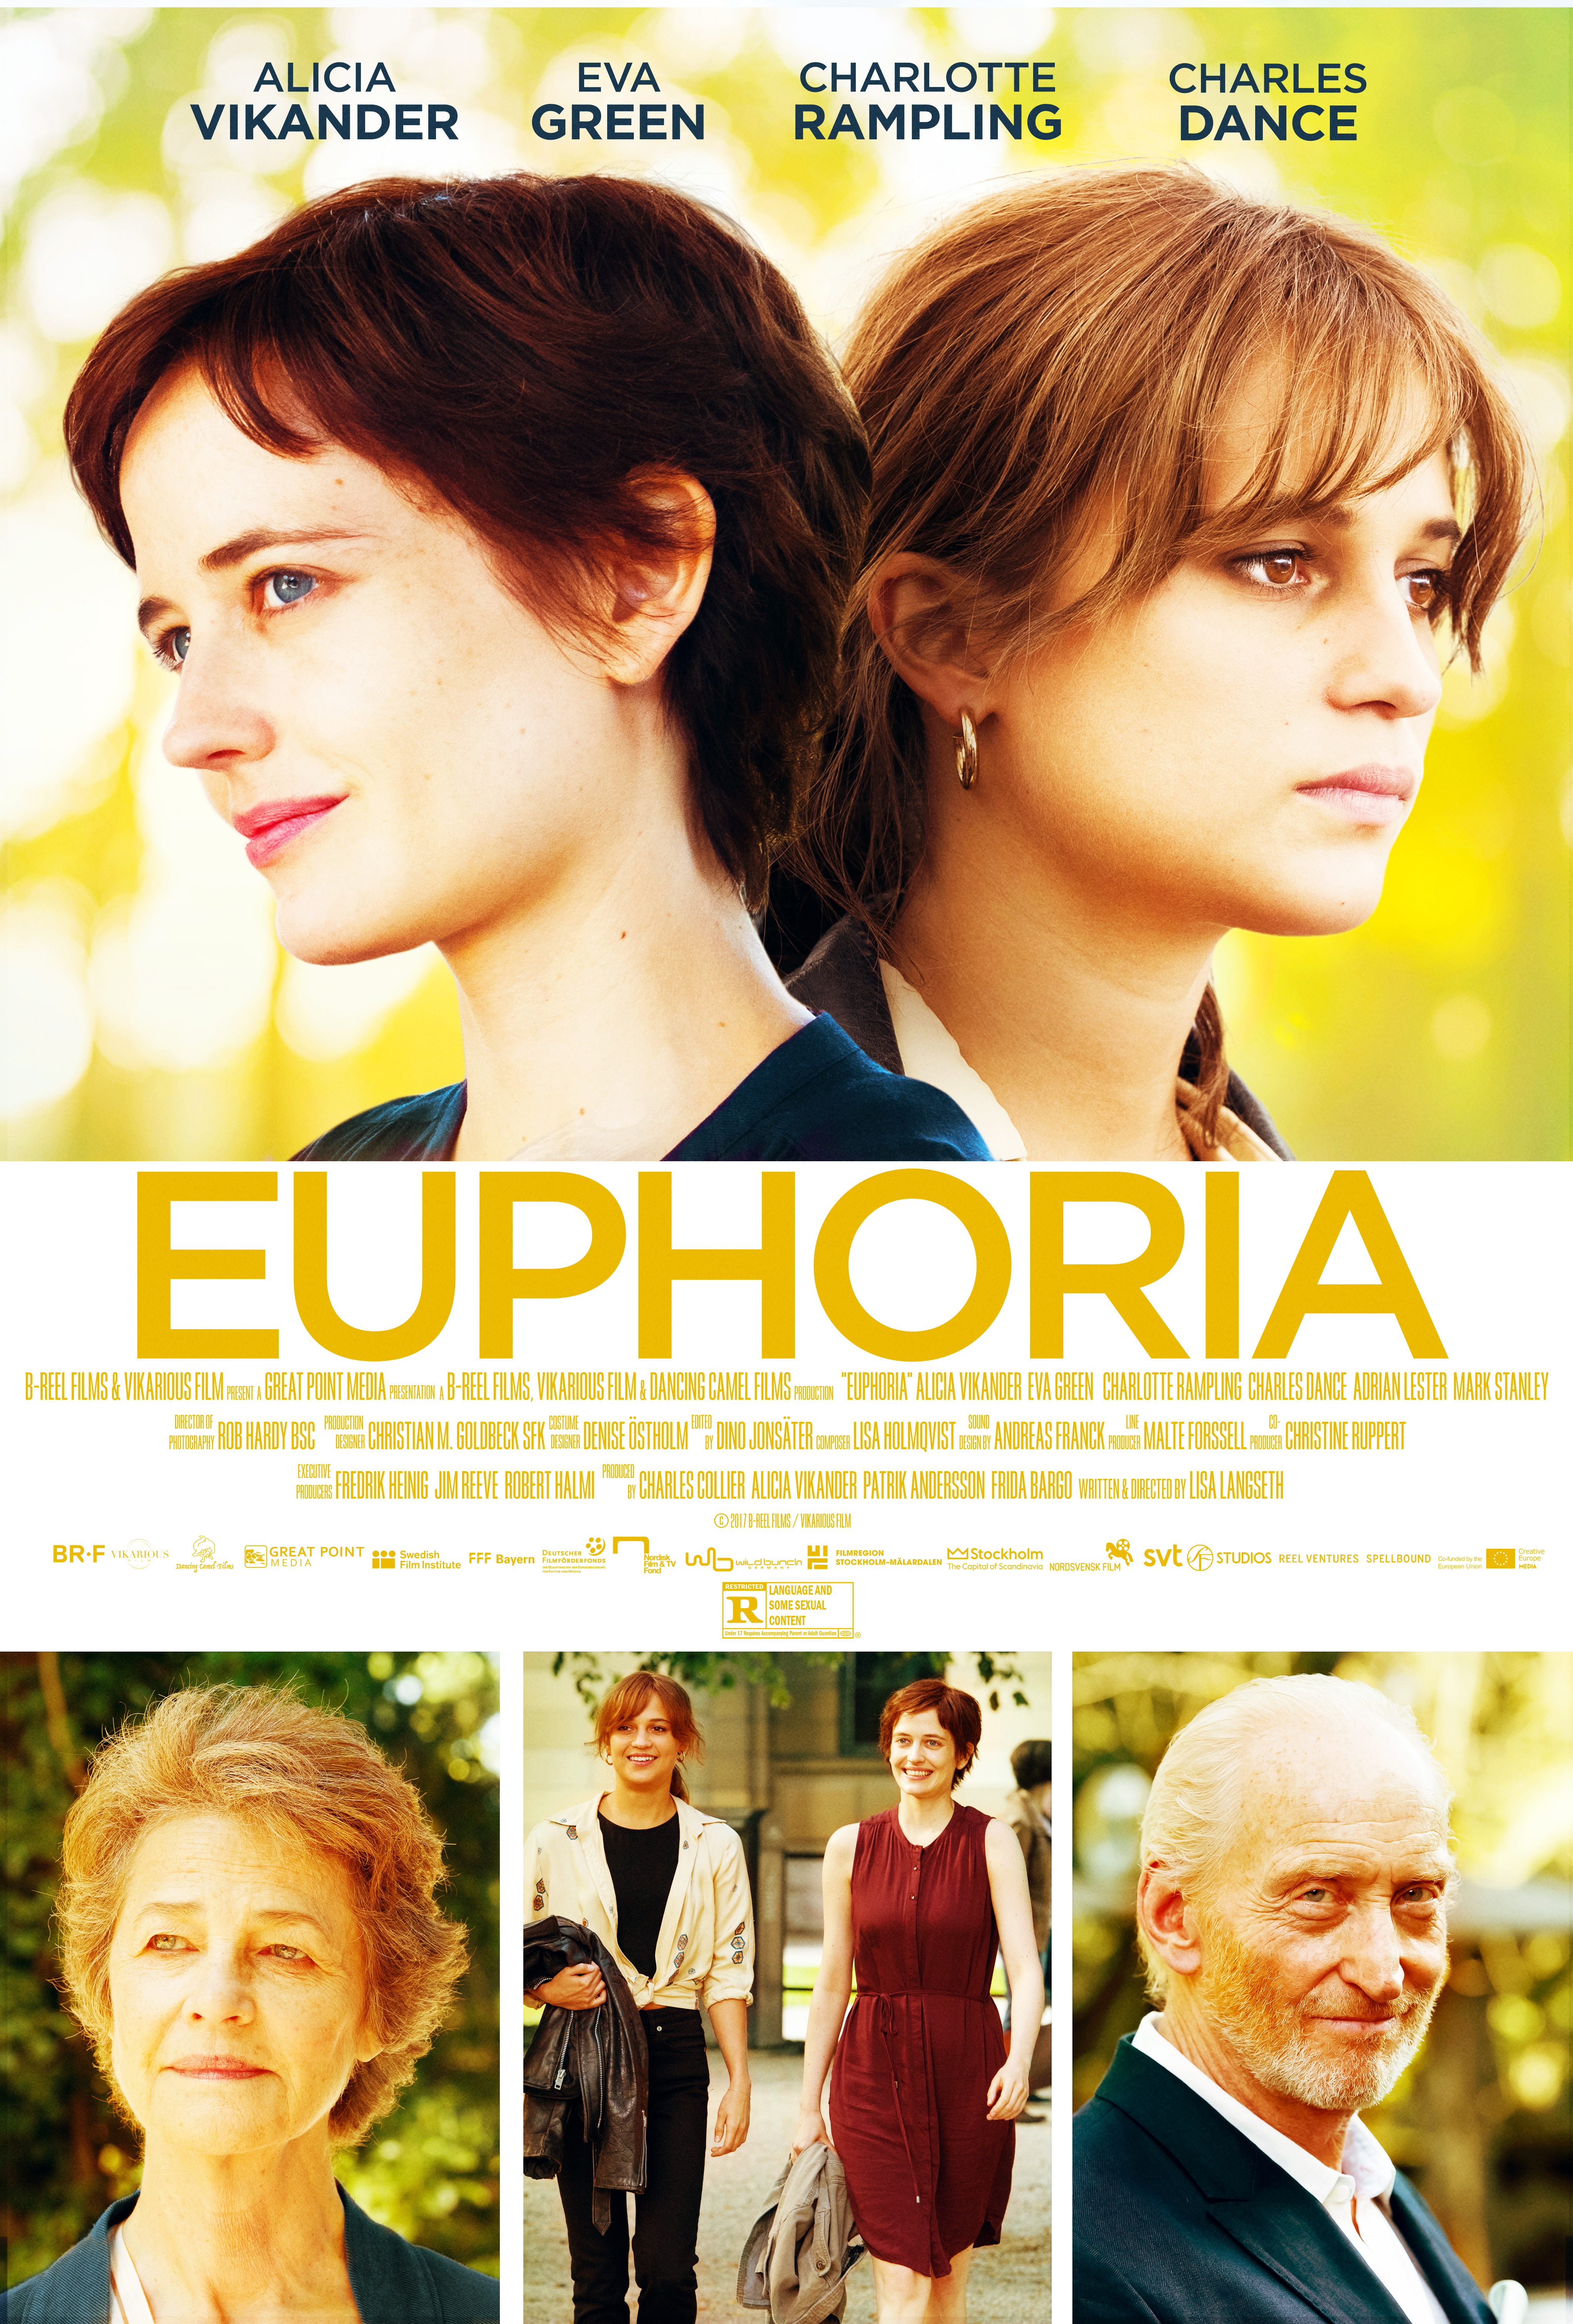 Nonton film Euphoria layarkaca21 indoxx1 ganool online streaming terbaru